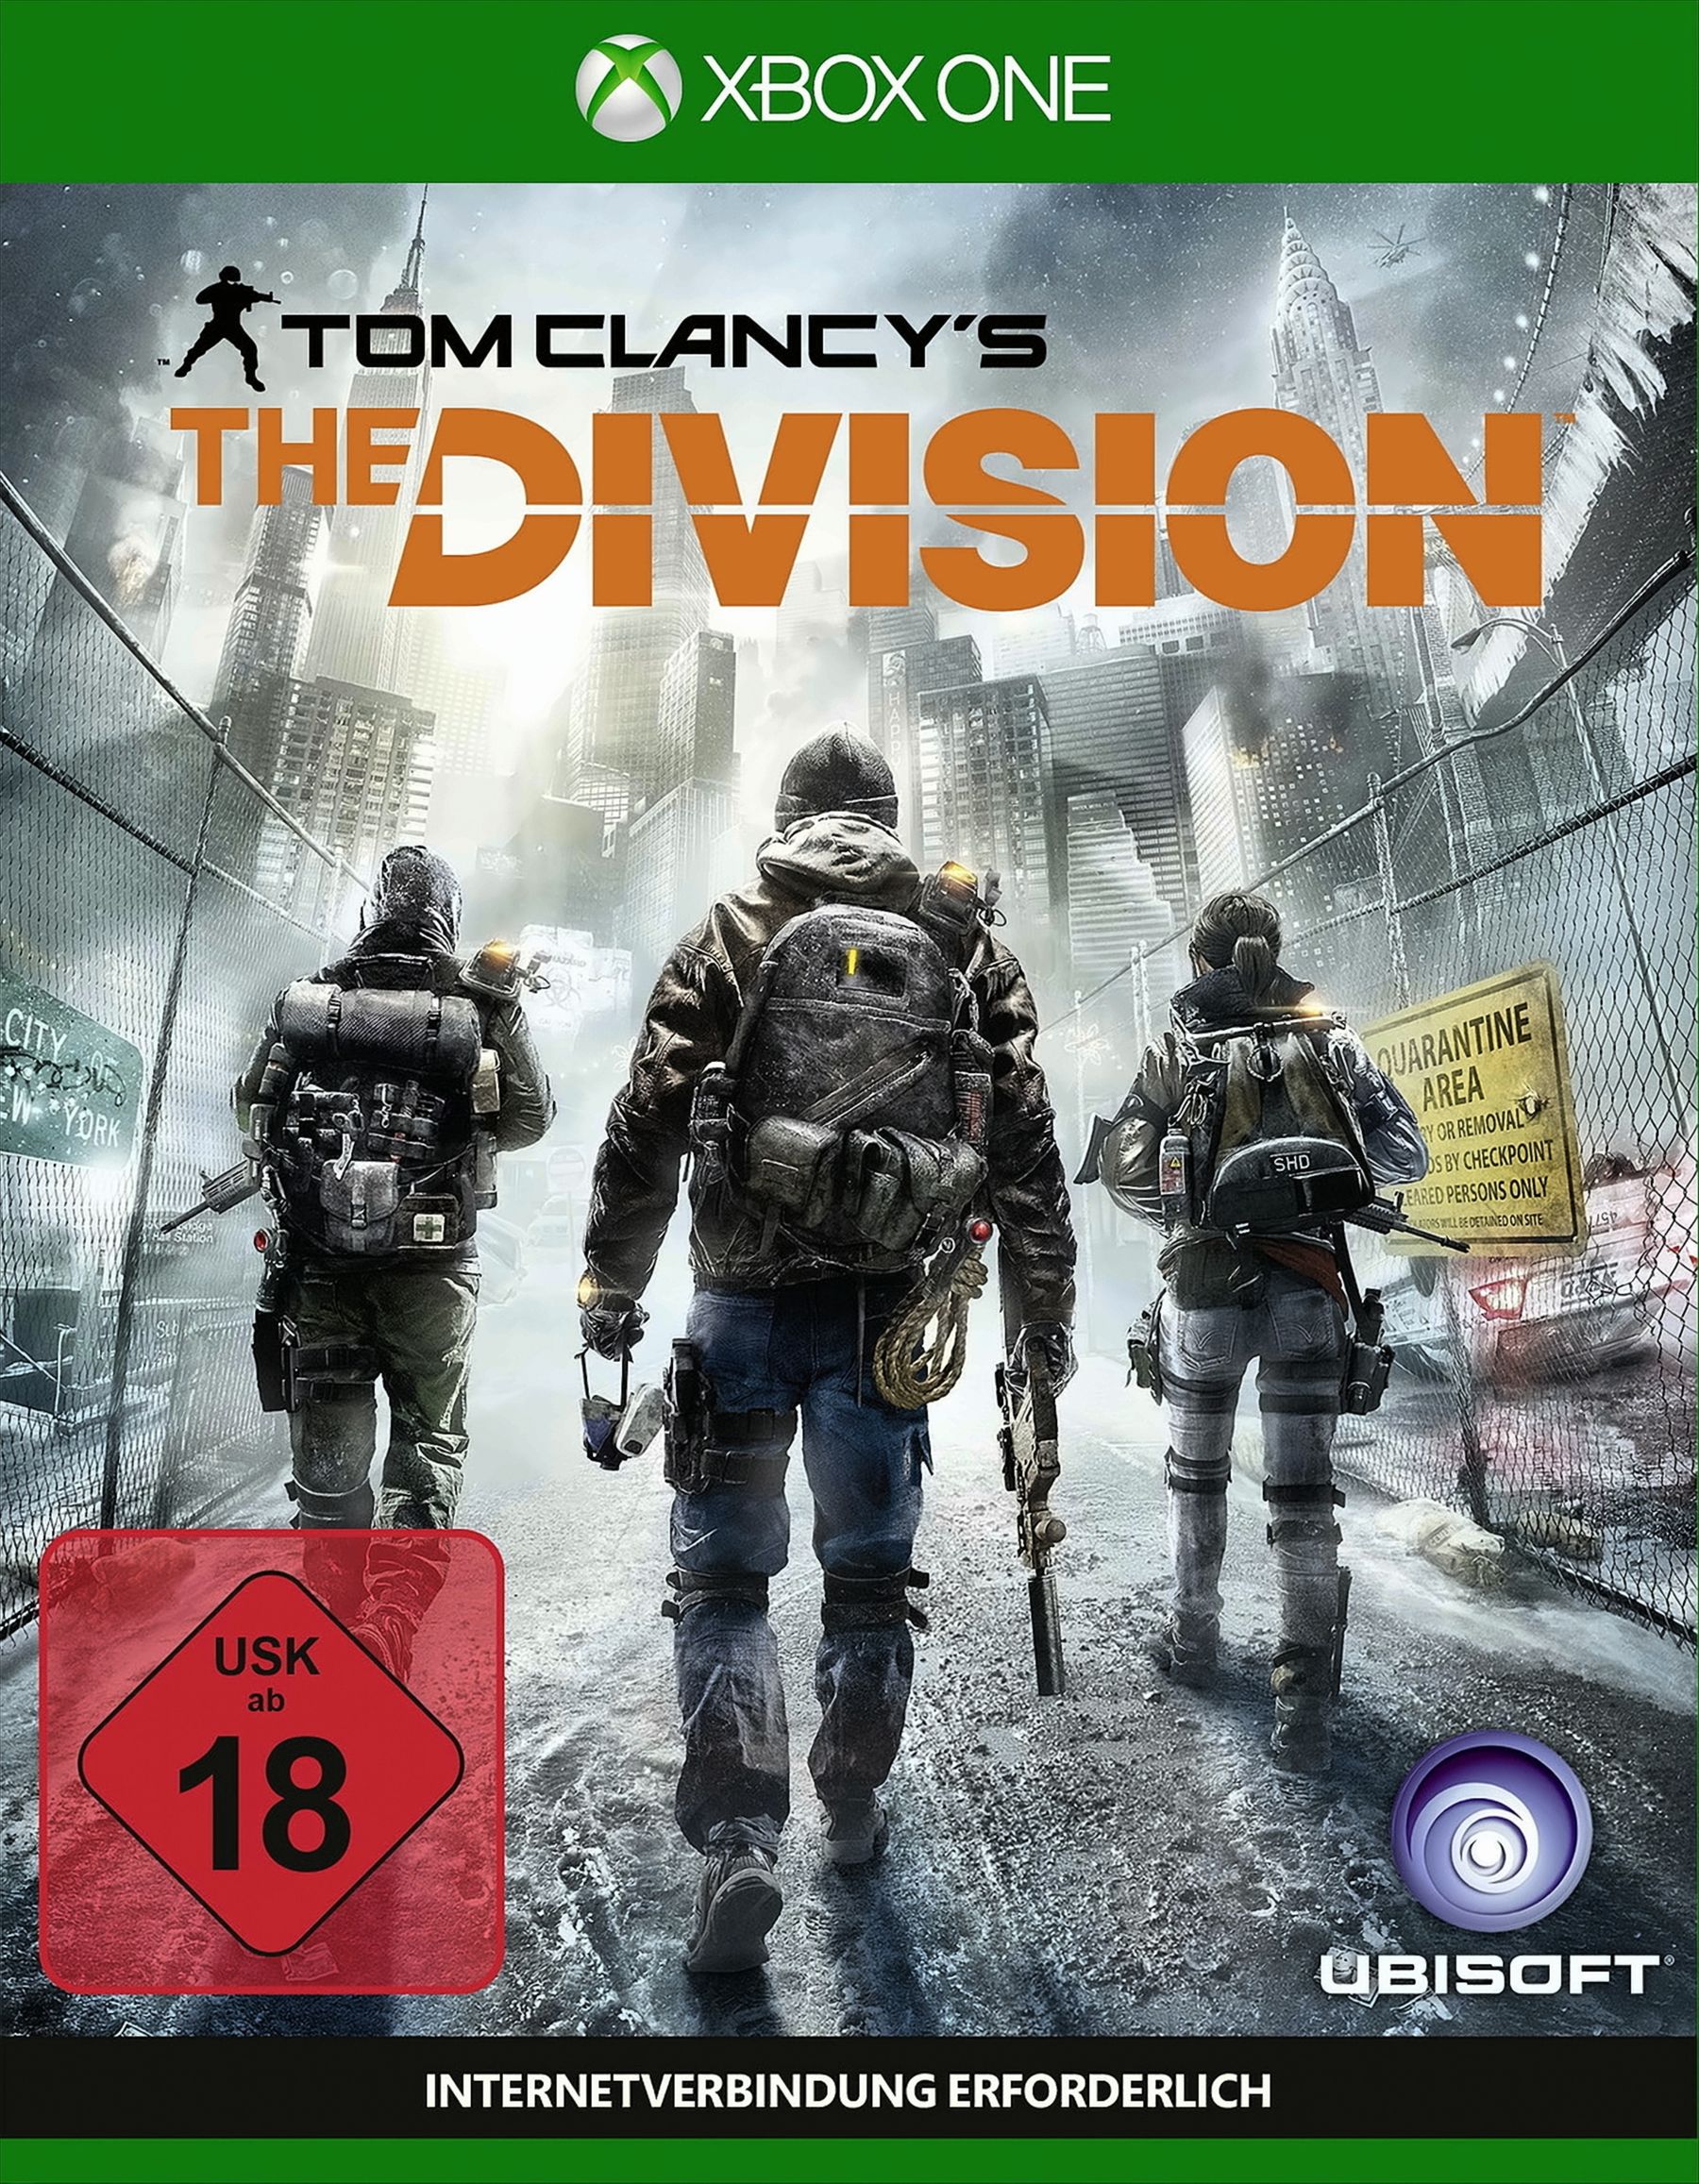 Tom Clancy's The Division von Ubisoft